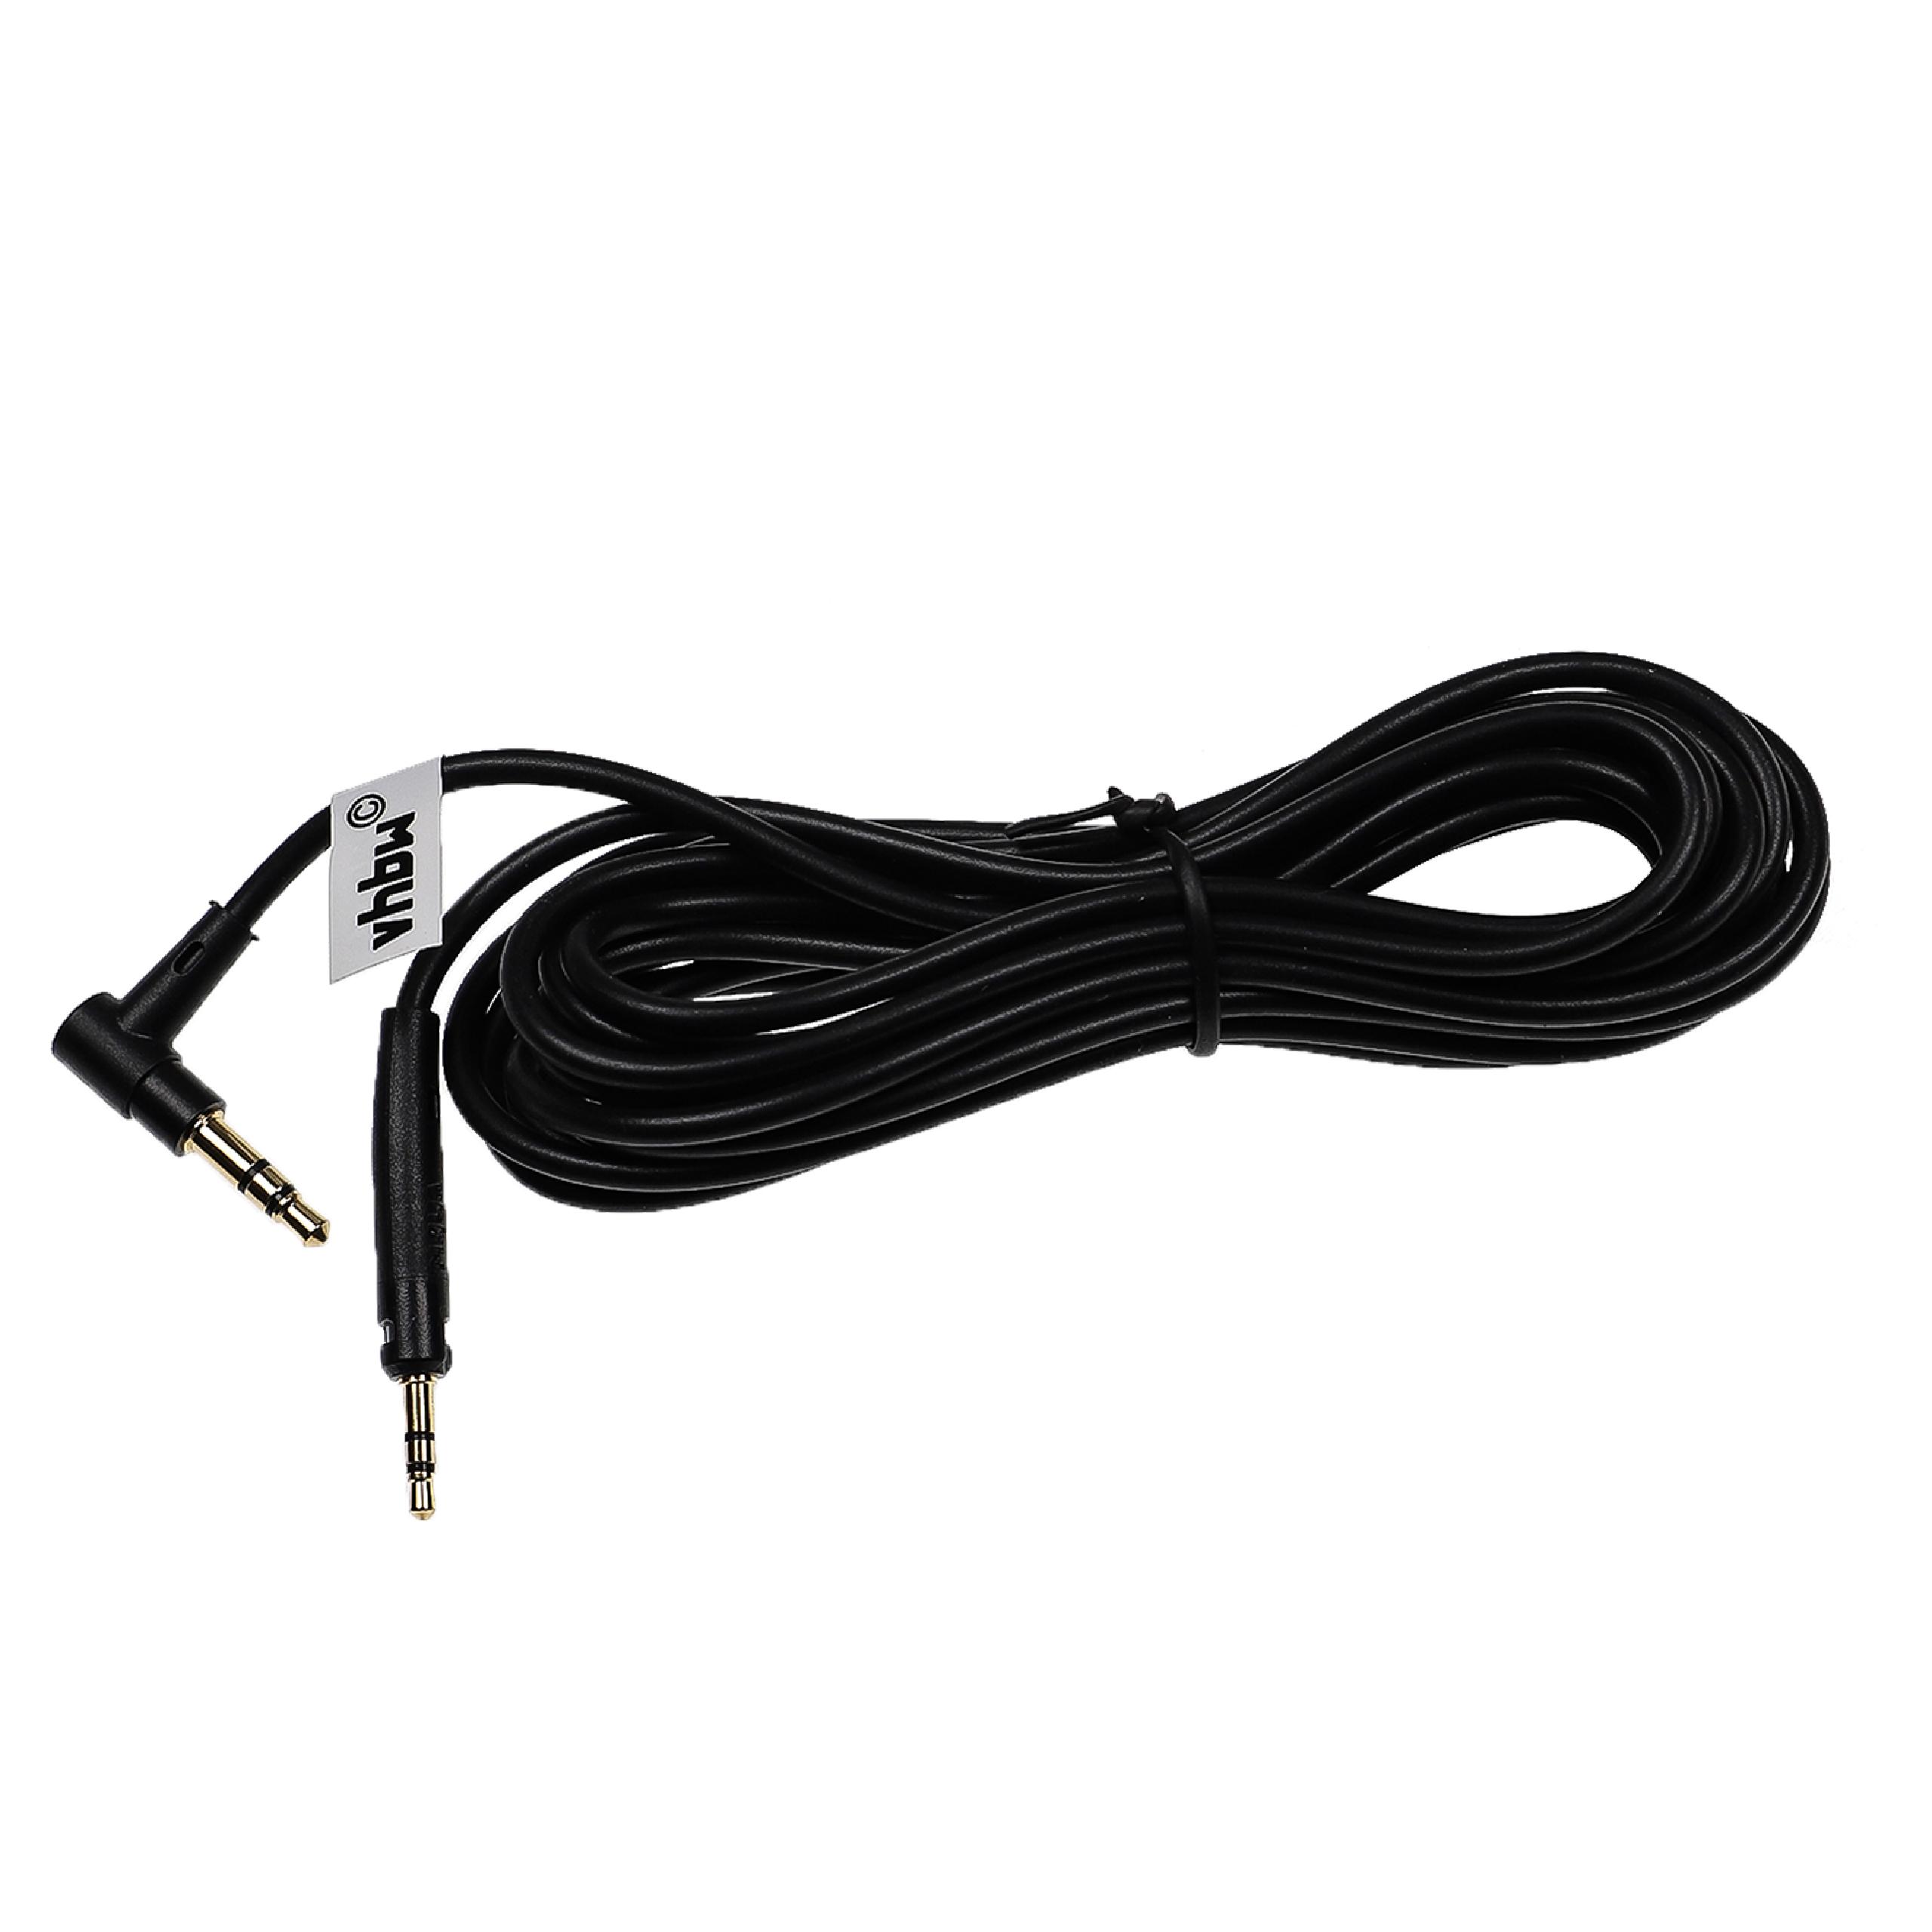 Kopfhörer Kabel passend für AKG u.a., 3 m, schwarz